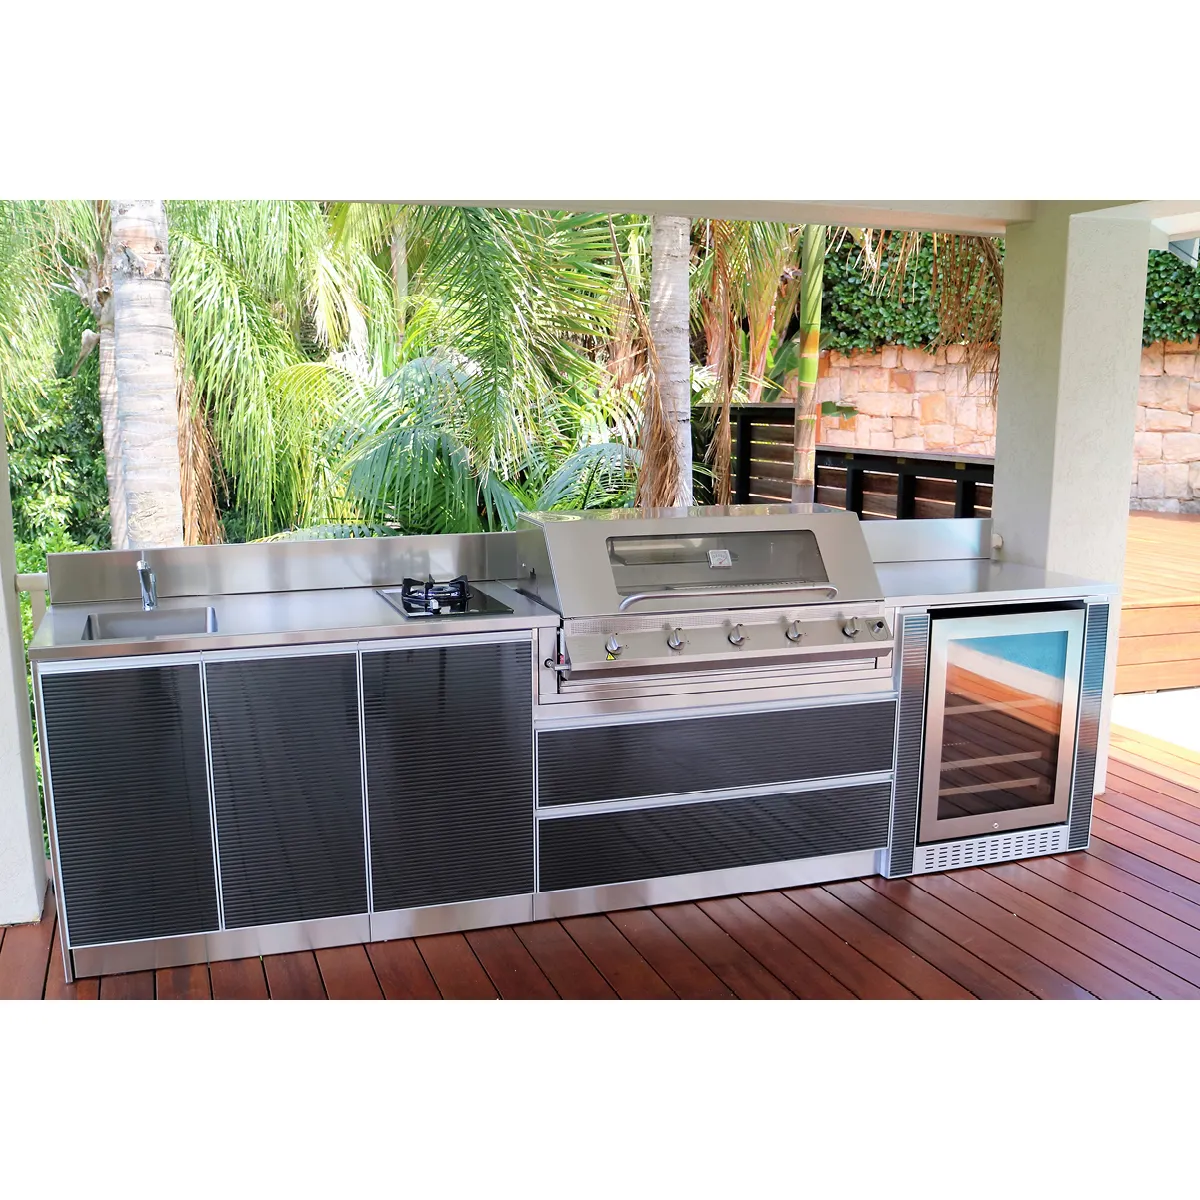 Barbekü adası açık mutfak ızgara buzdolabı ev ve bahçe için 304 paslanmaz çelik